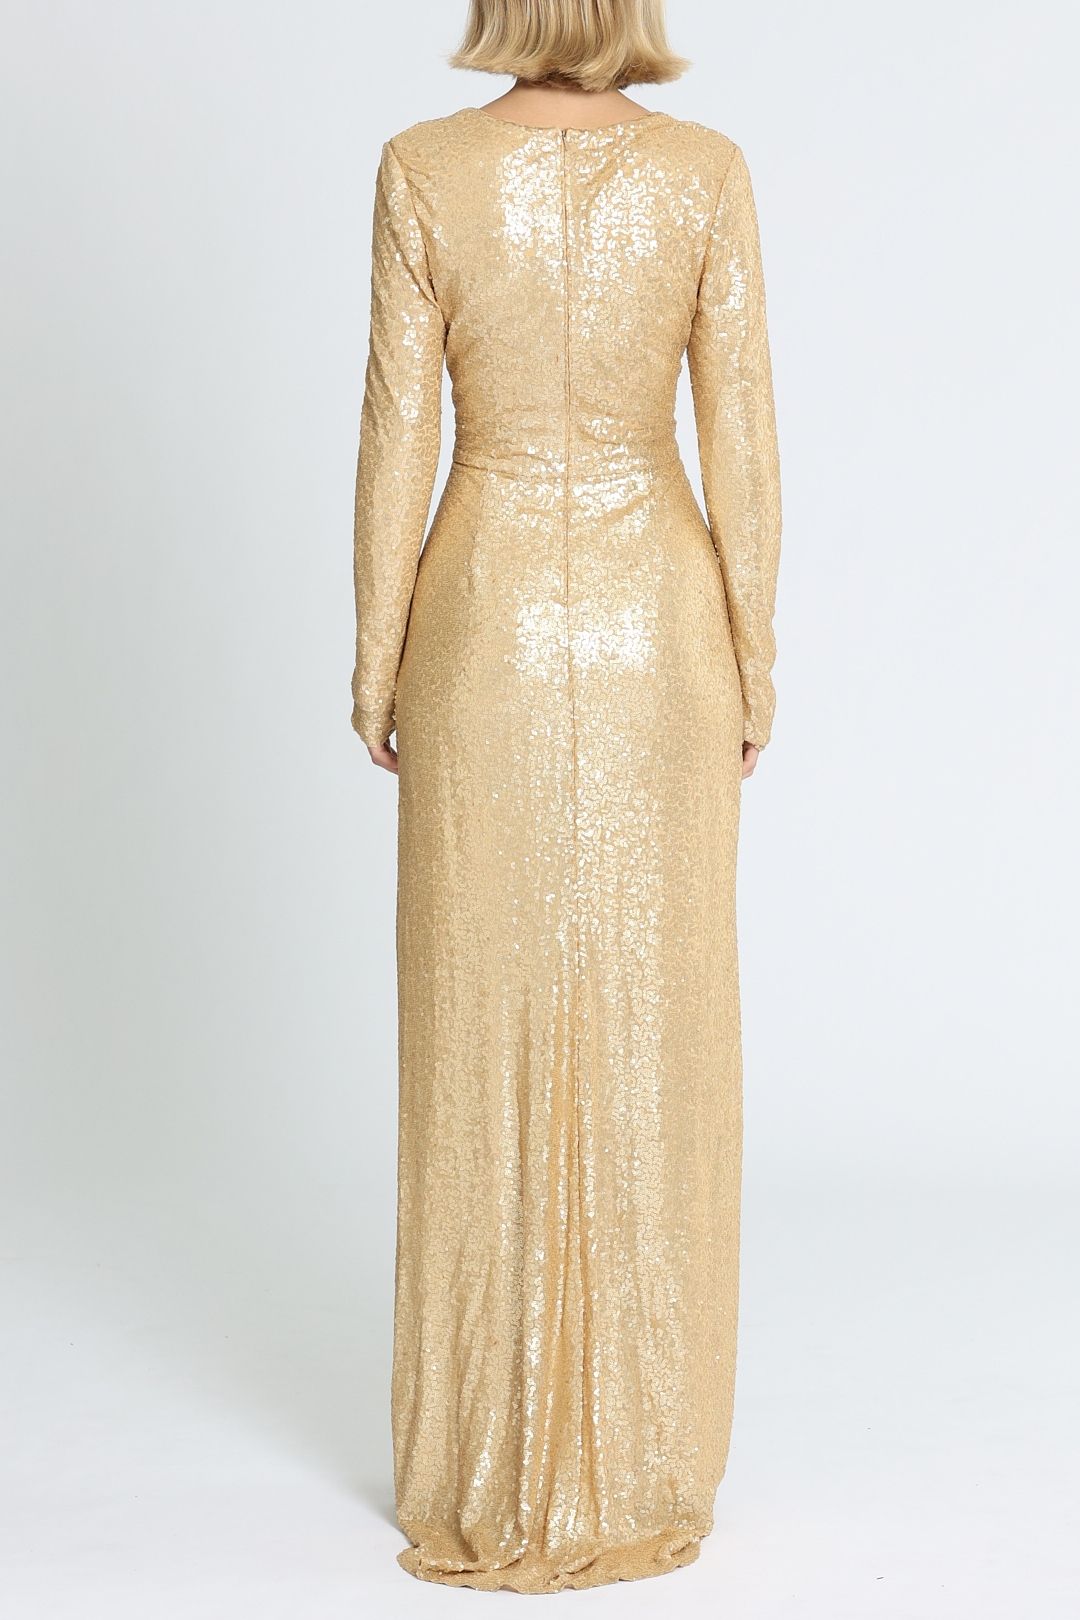 Tadashi Shoji - Angelique Gold Drape Gown Bodycon